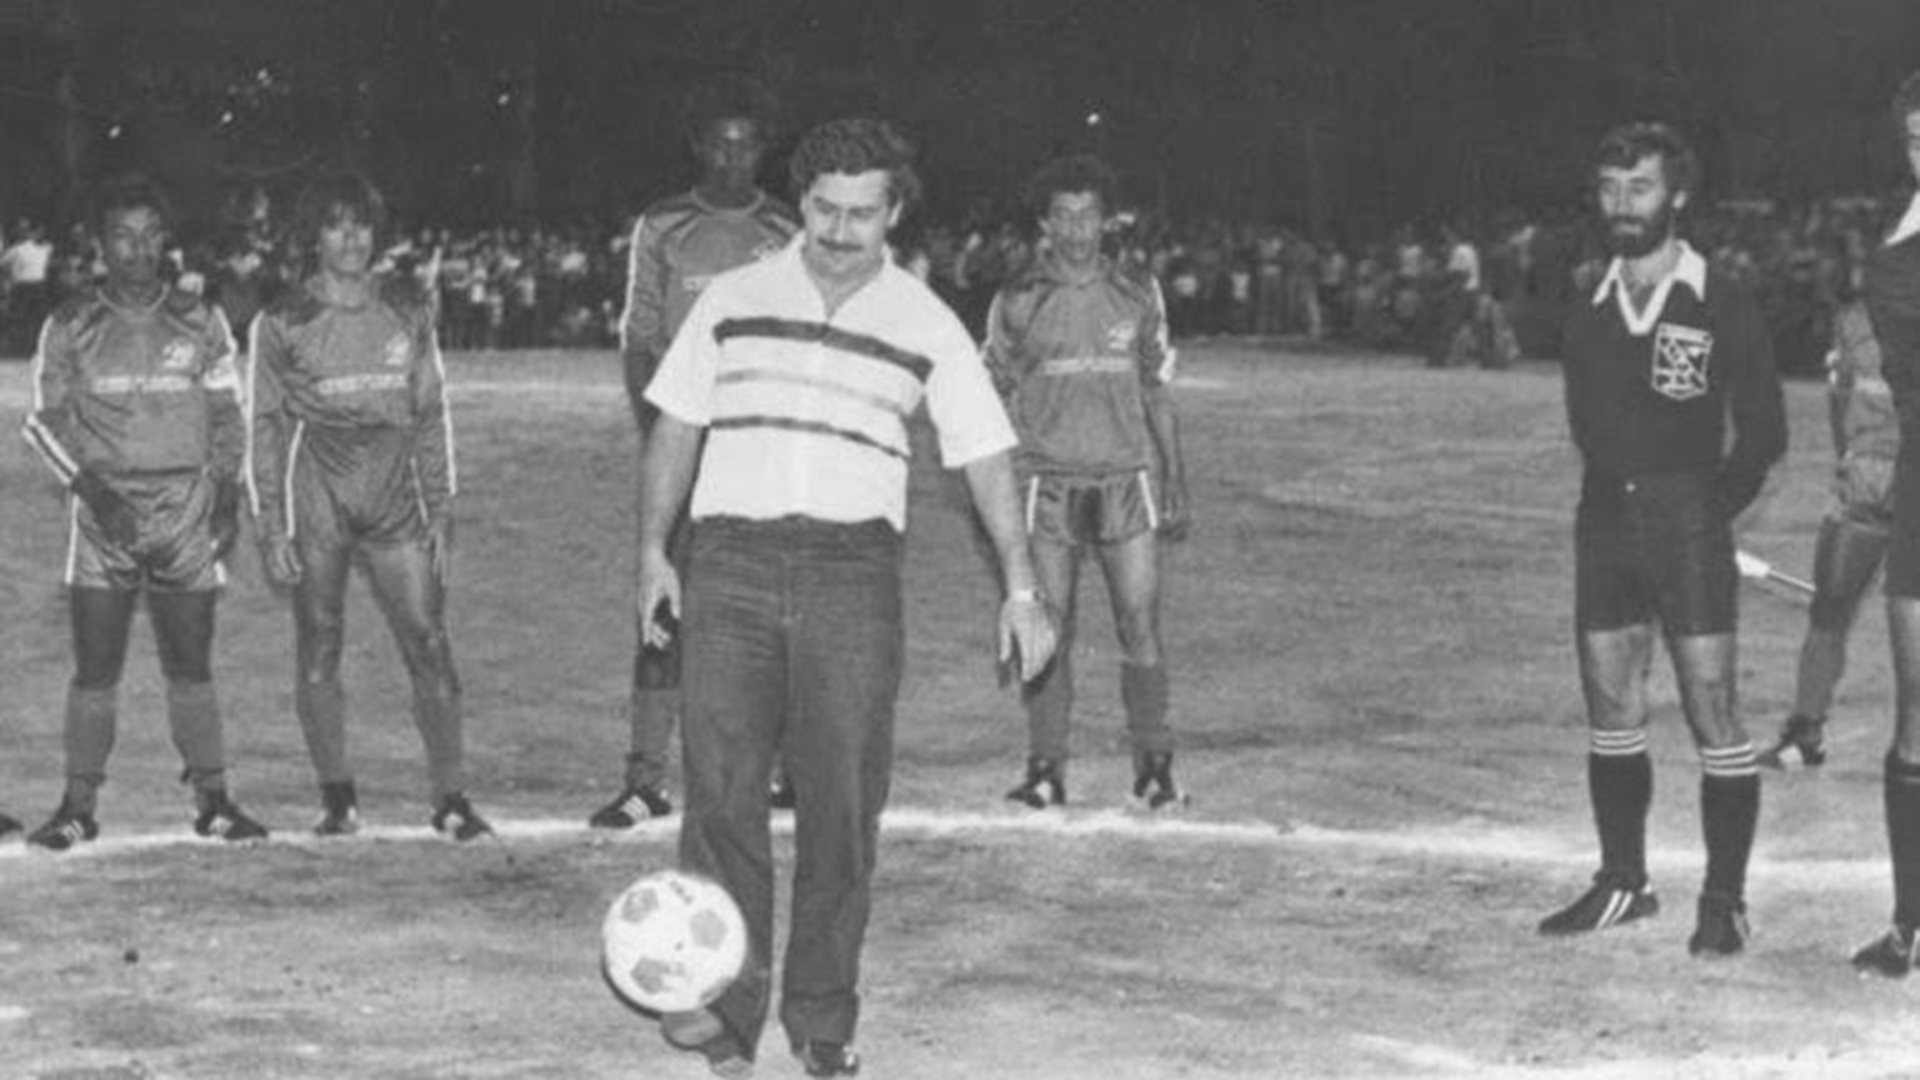 Pablo Escobar haciendo el saque de honor en un partido de fútbol en Medellín. 